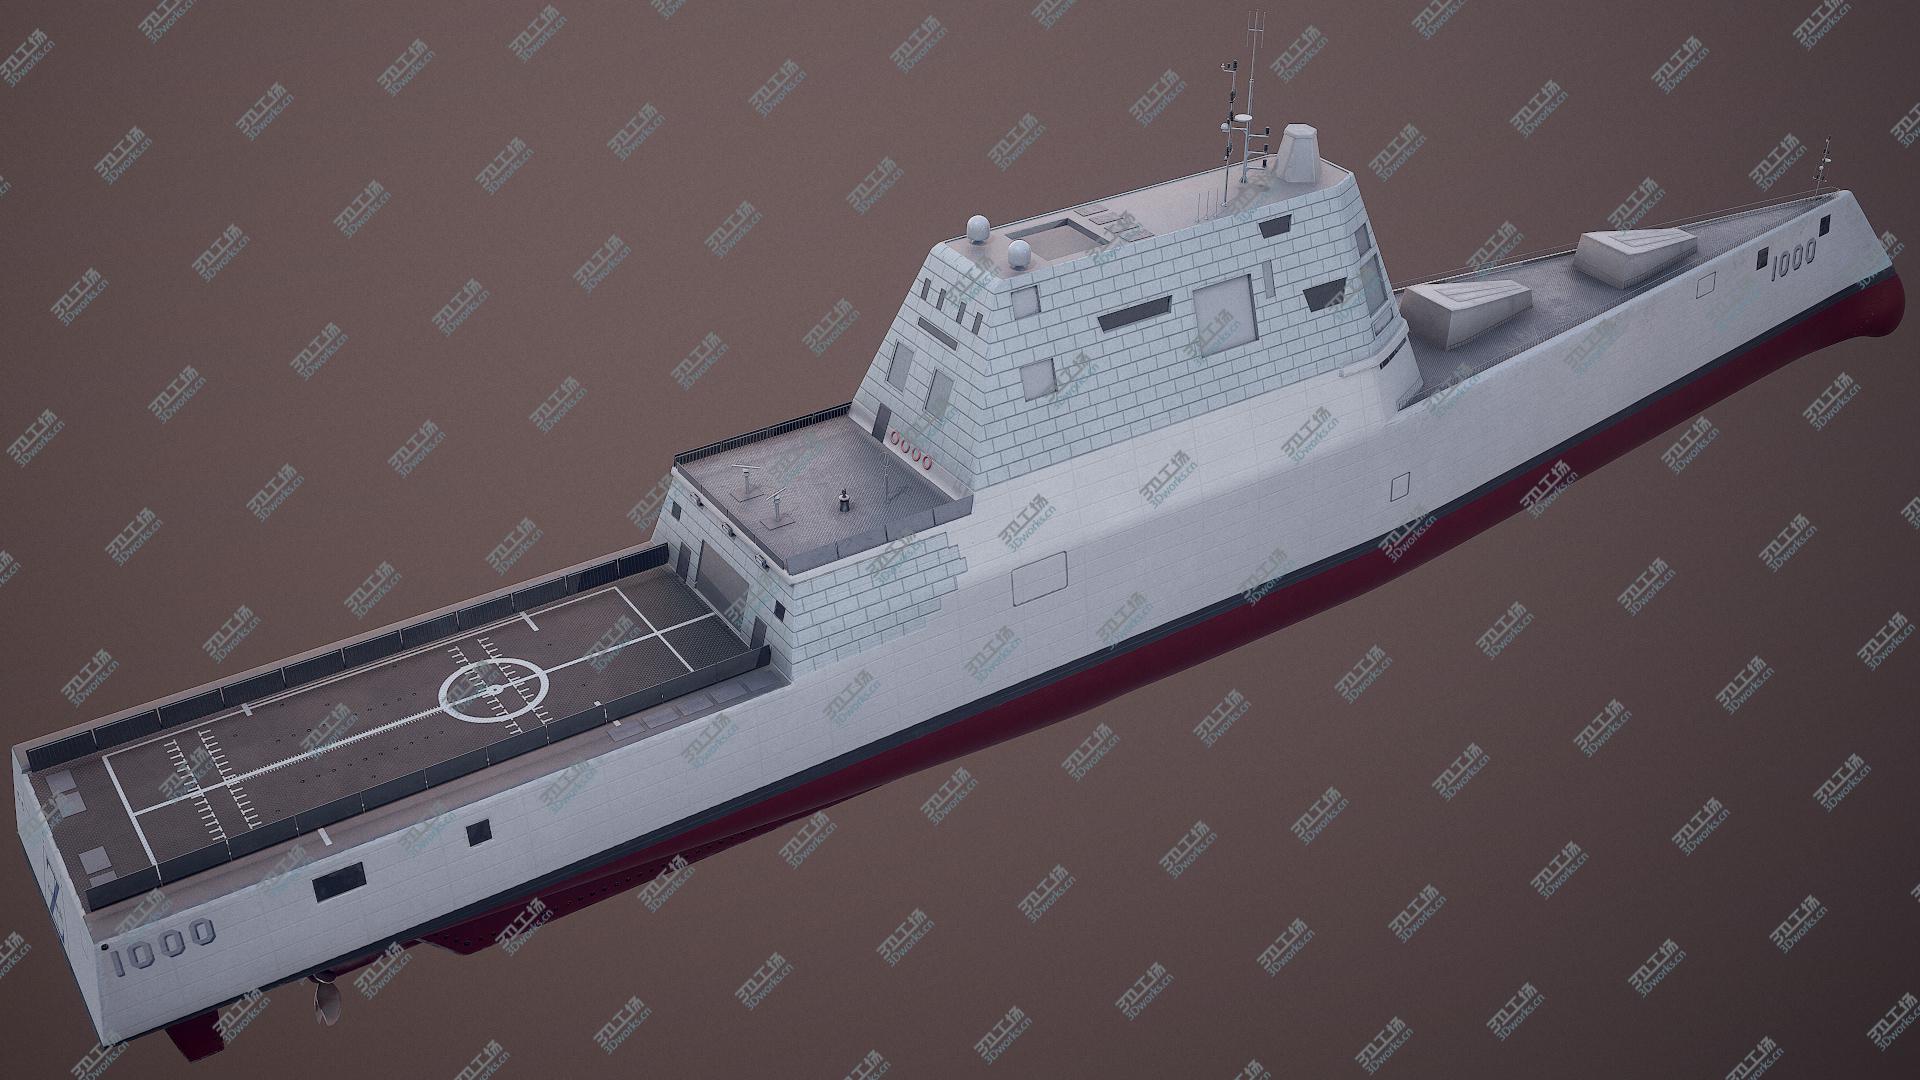 images/goods_img/20210319/Zumwalt Class Destroyer USS DDG-1000 3D model/3.jpg